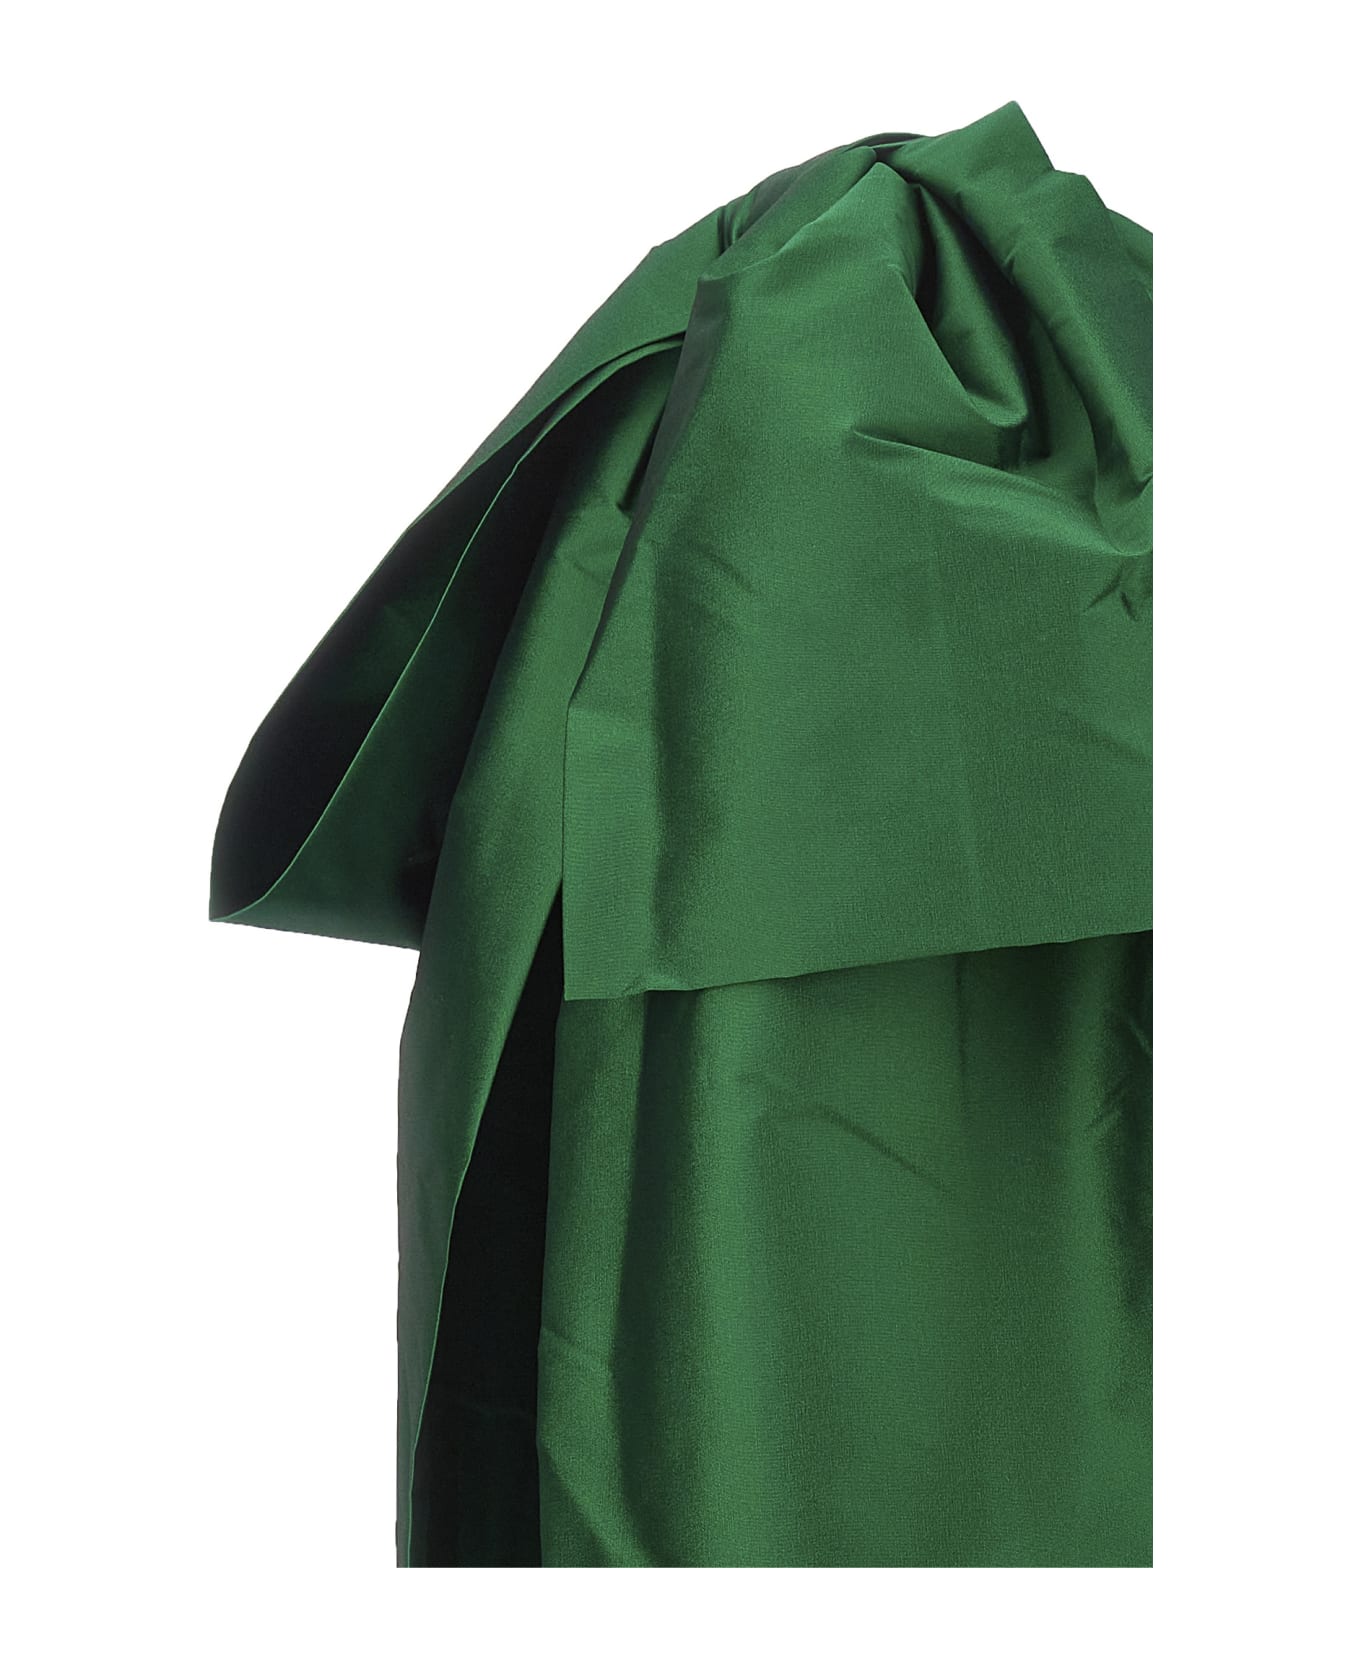 Bernadette 'josselin' Dress - Green ワンピース＆ドレス